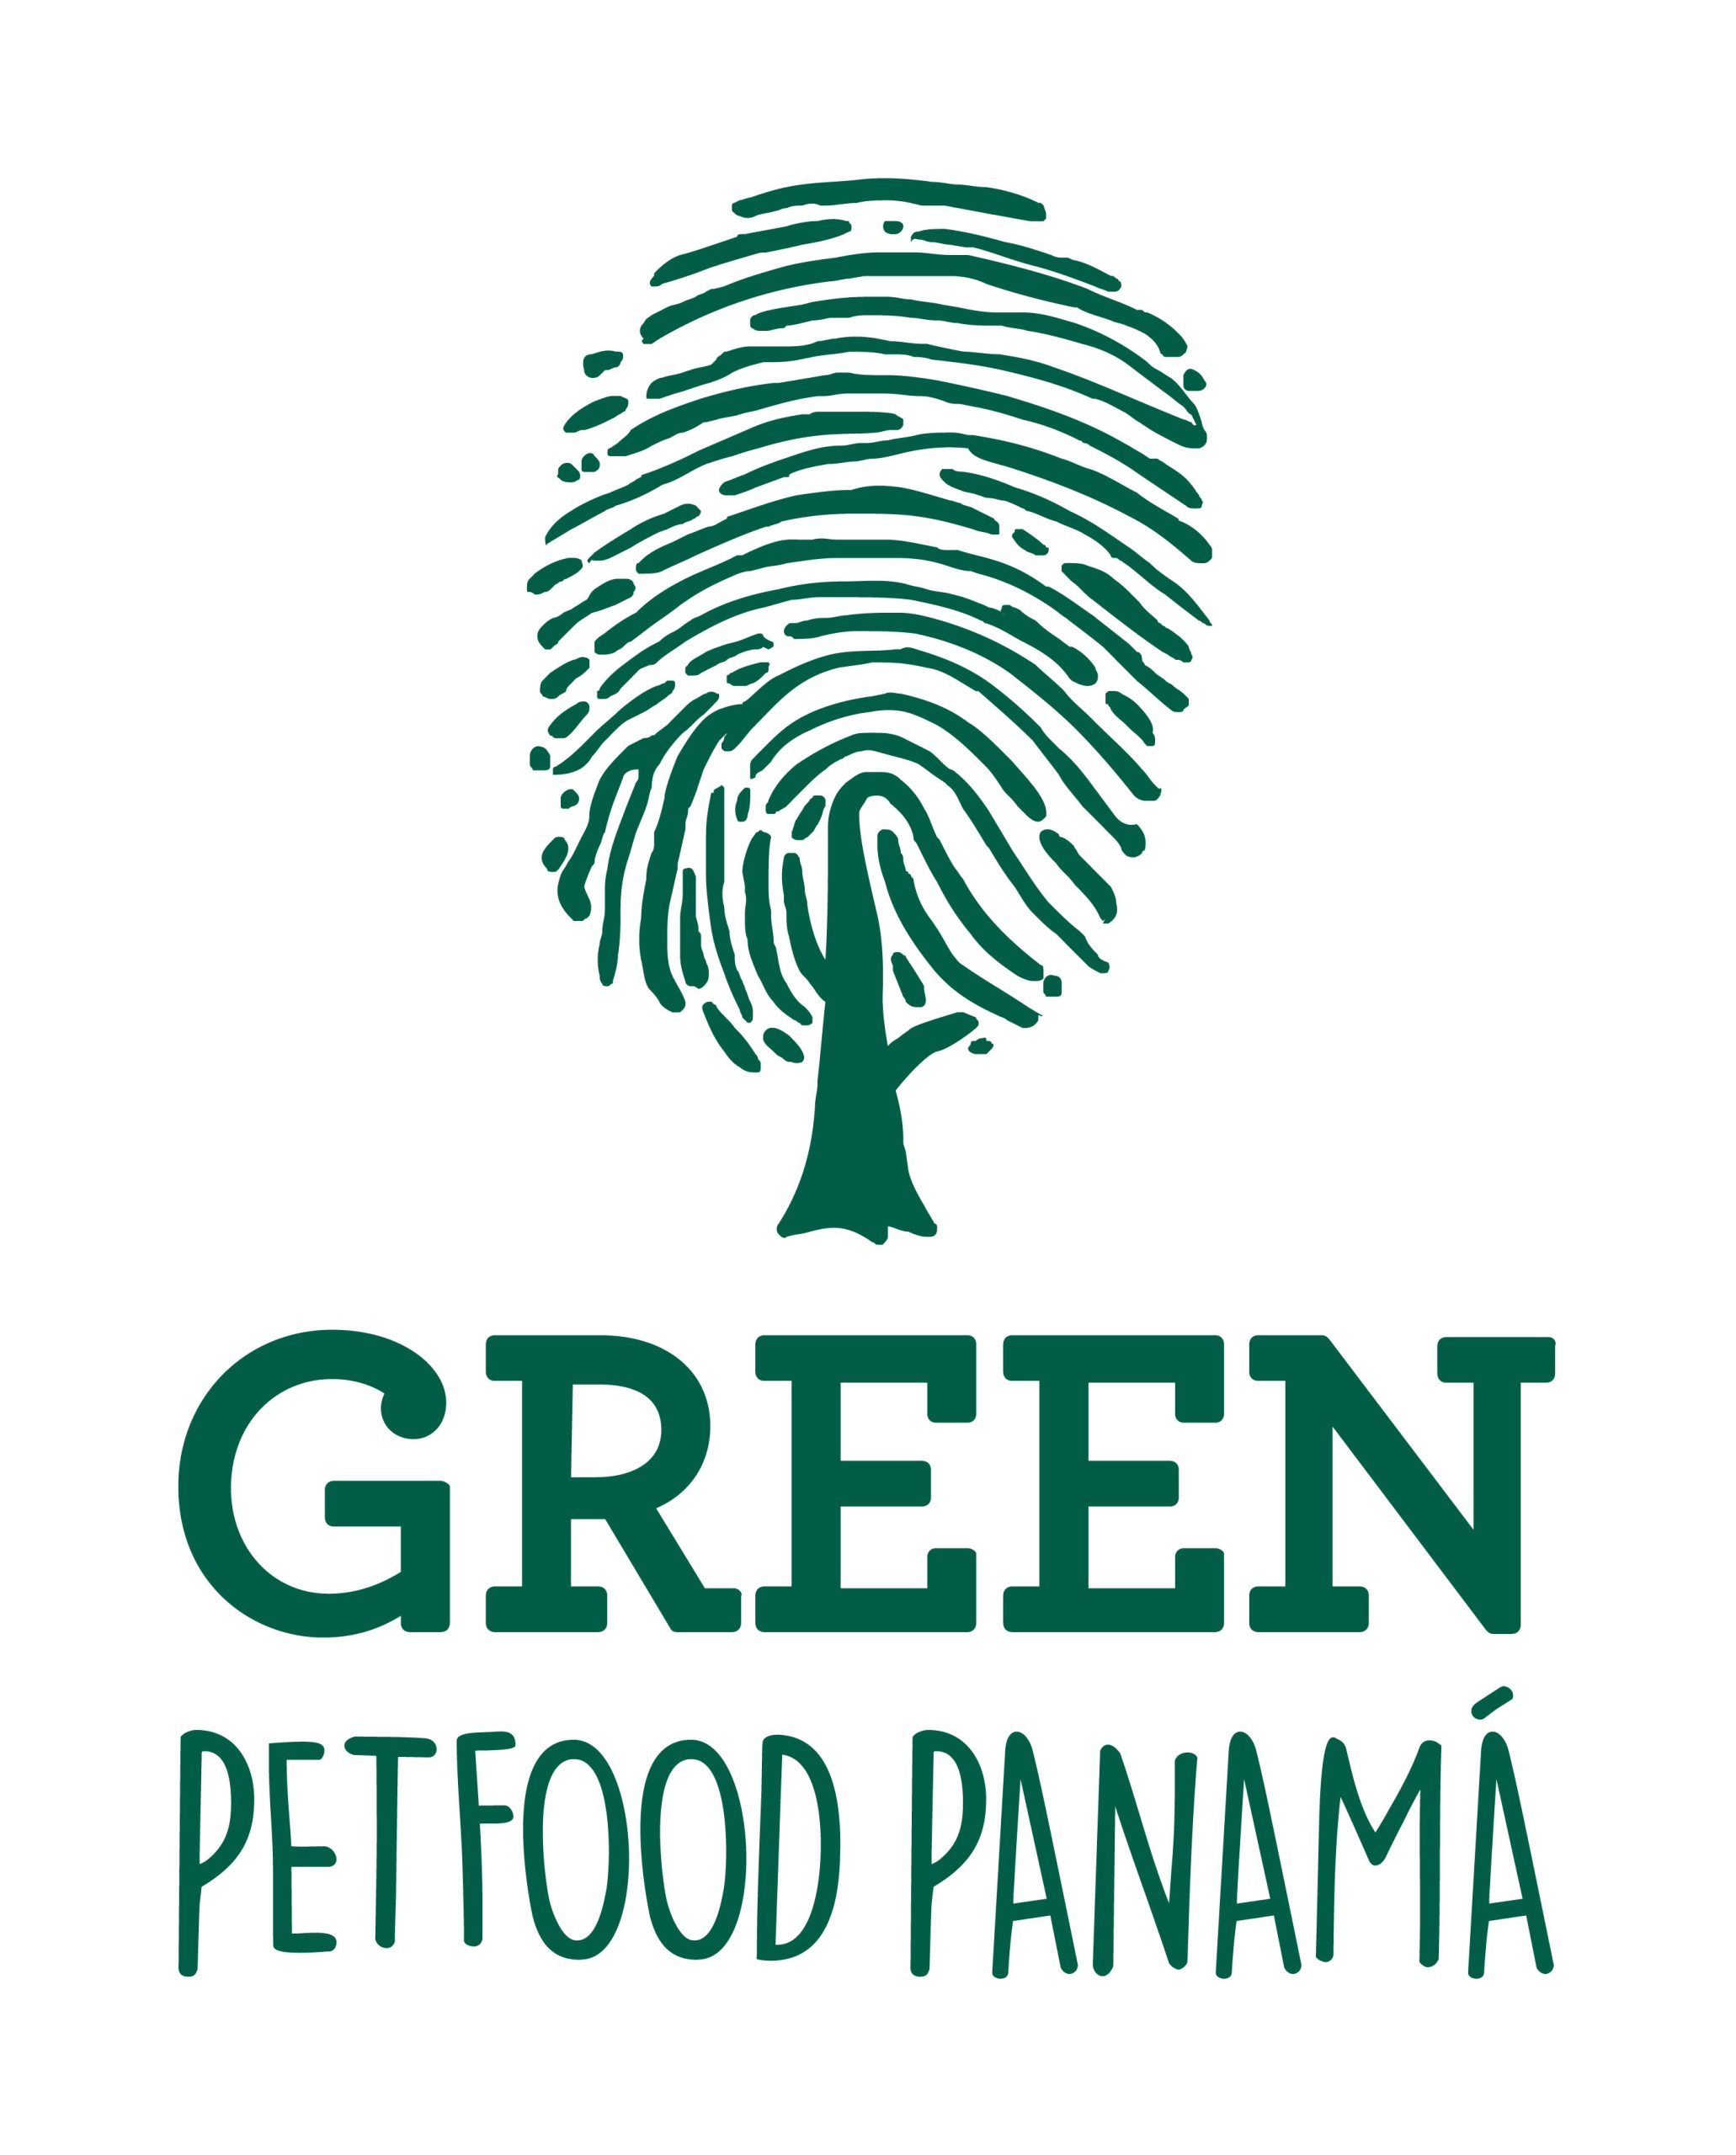 petfood panama